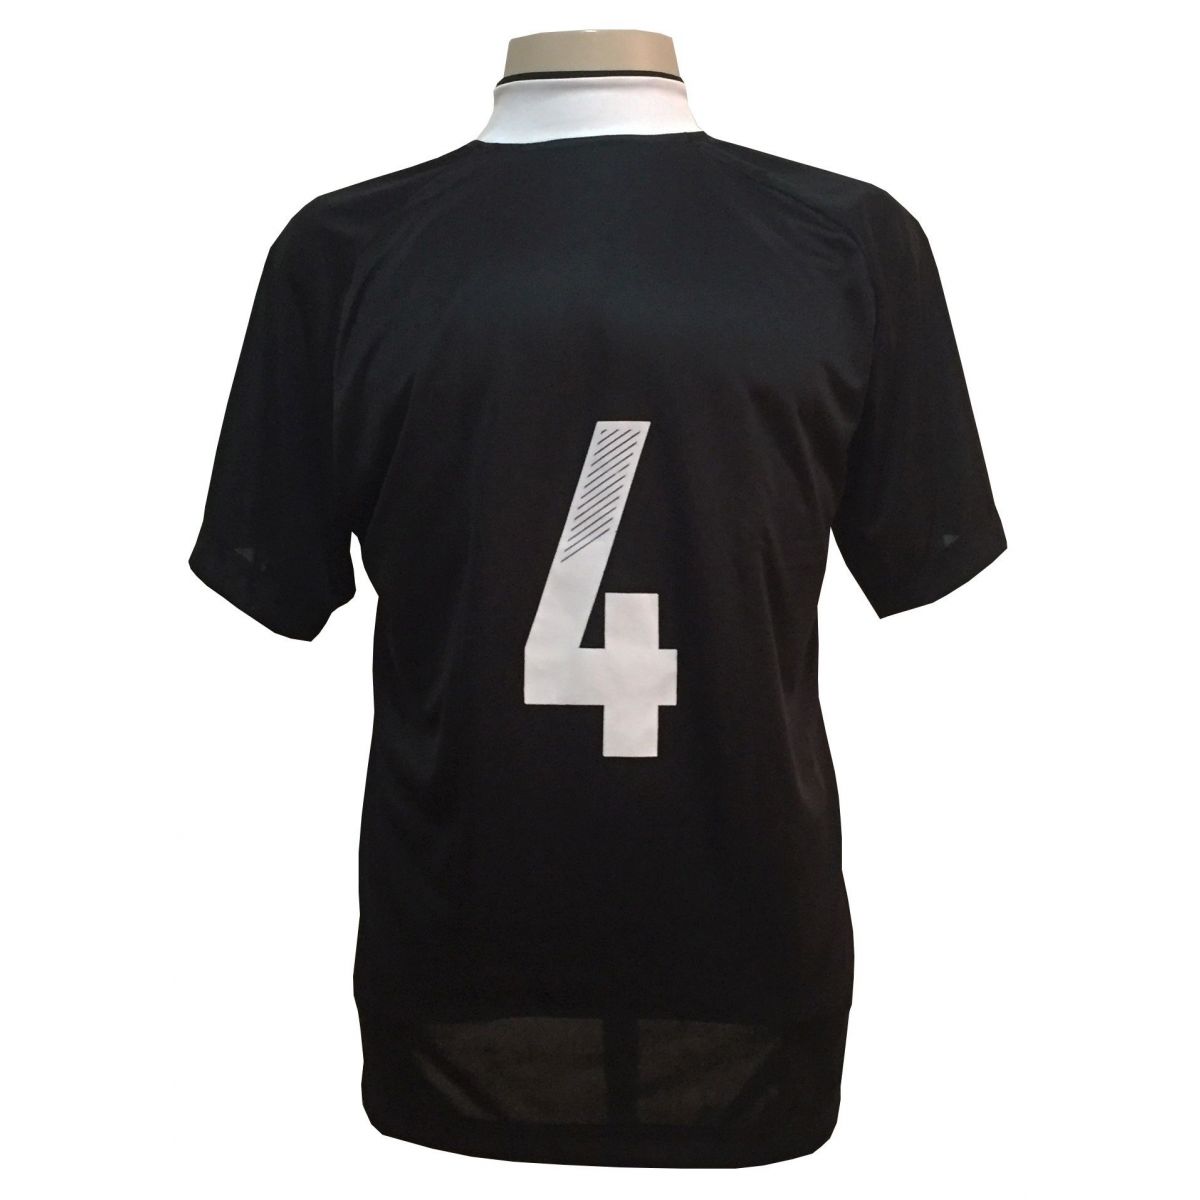 Uniforme Esportivo com 12 camisas modelo Milan Preto/Branco + 12 calções modelo Madrid + 1 Goleiro + Brindes